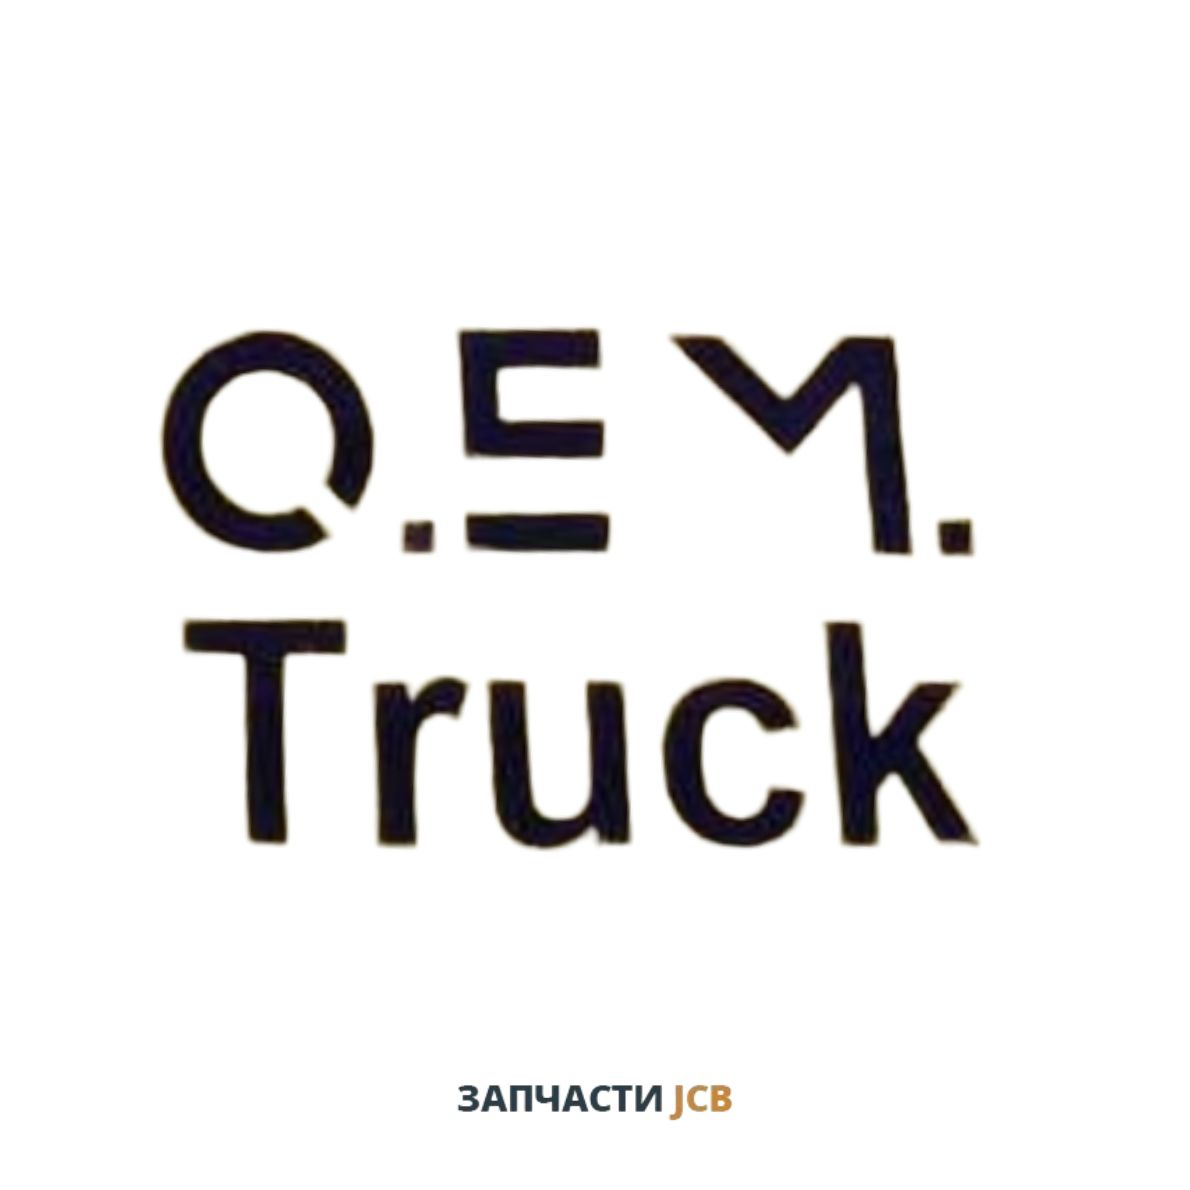 Моторное масло OEM Truck DEUTZ Oil TLS 15W-30 D (DQC II-05)